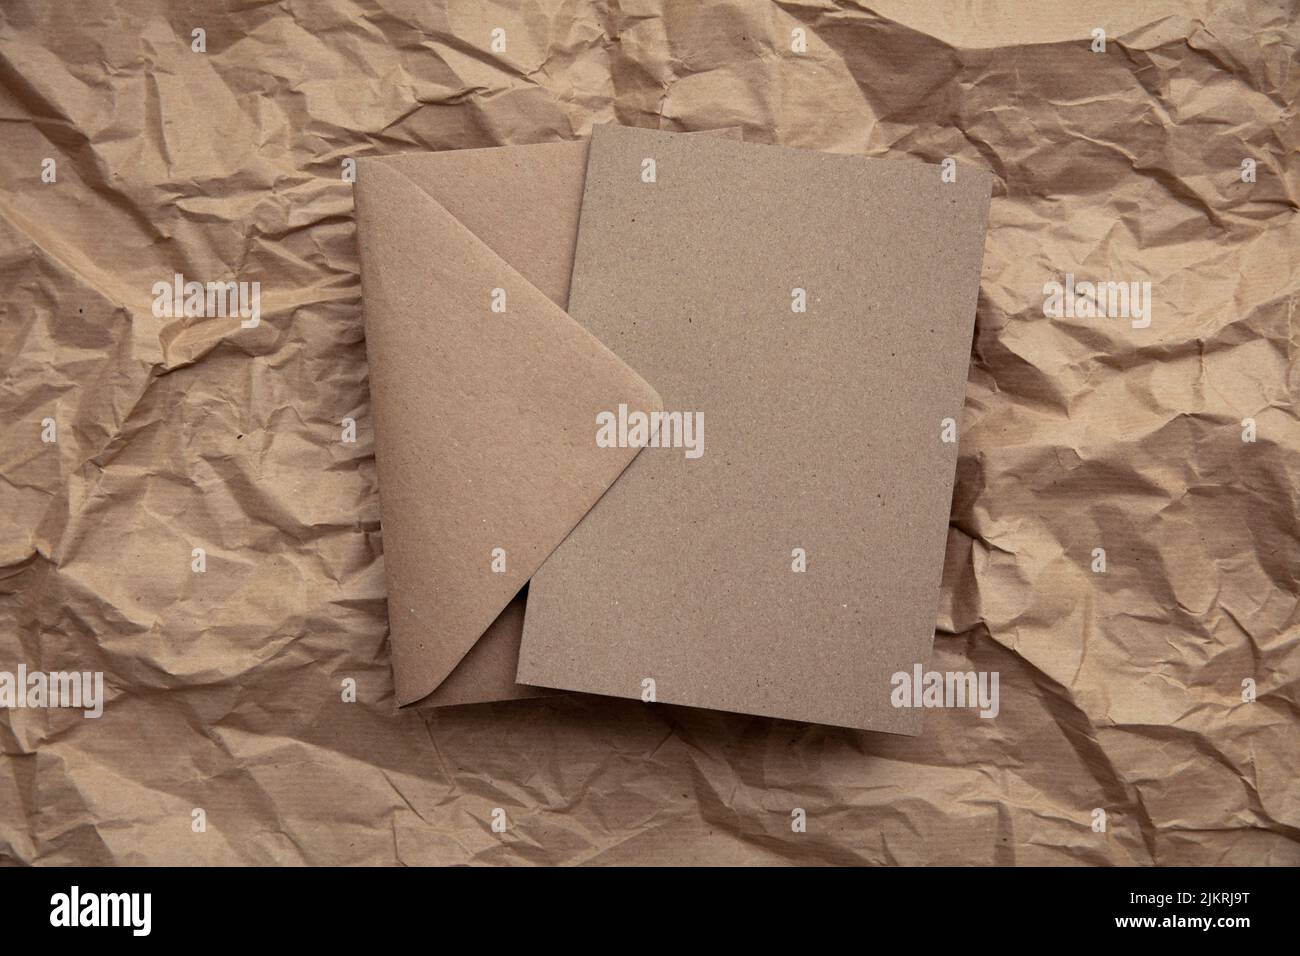 Maquette de carte vierge avec modèle d'enveloppe en papier kraft brun sur papier brun froissé Banque D'Images